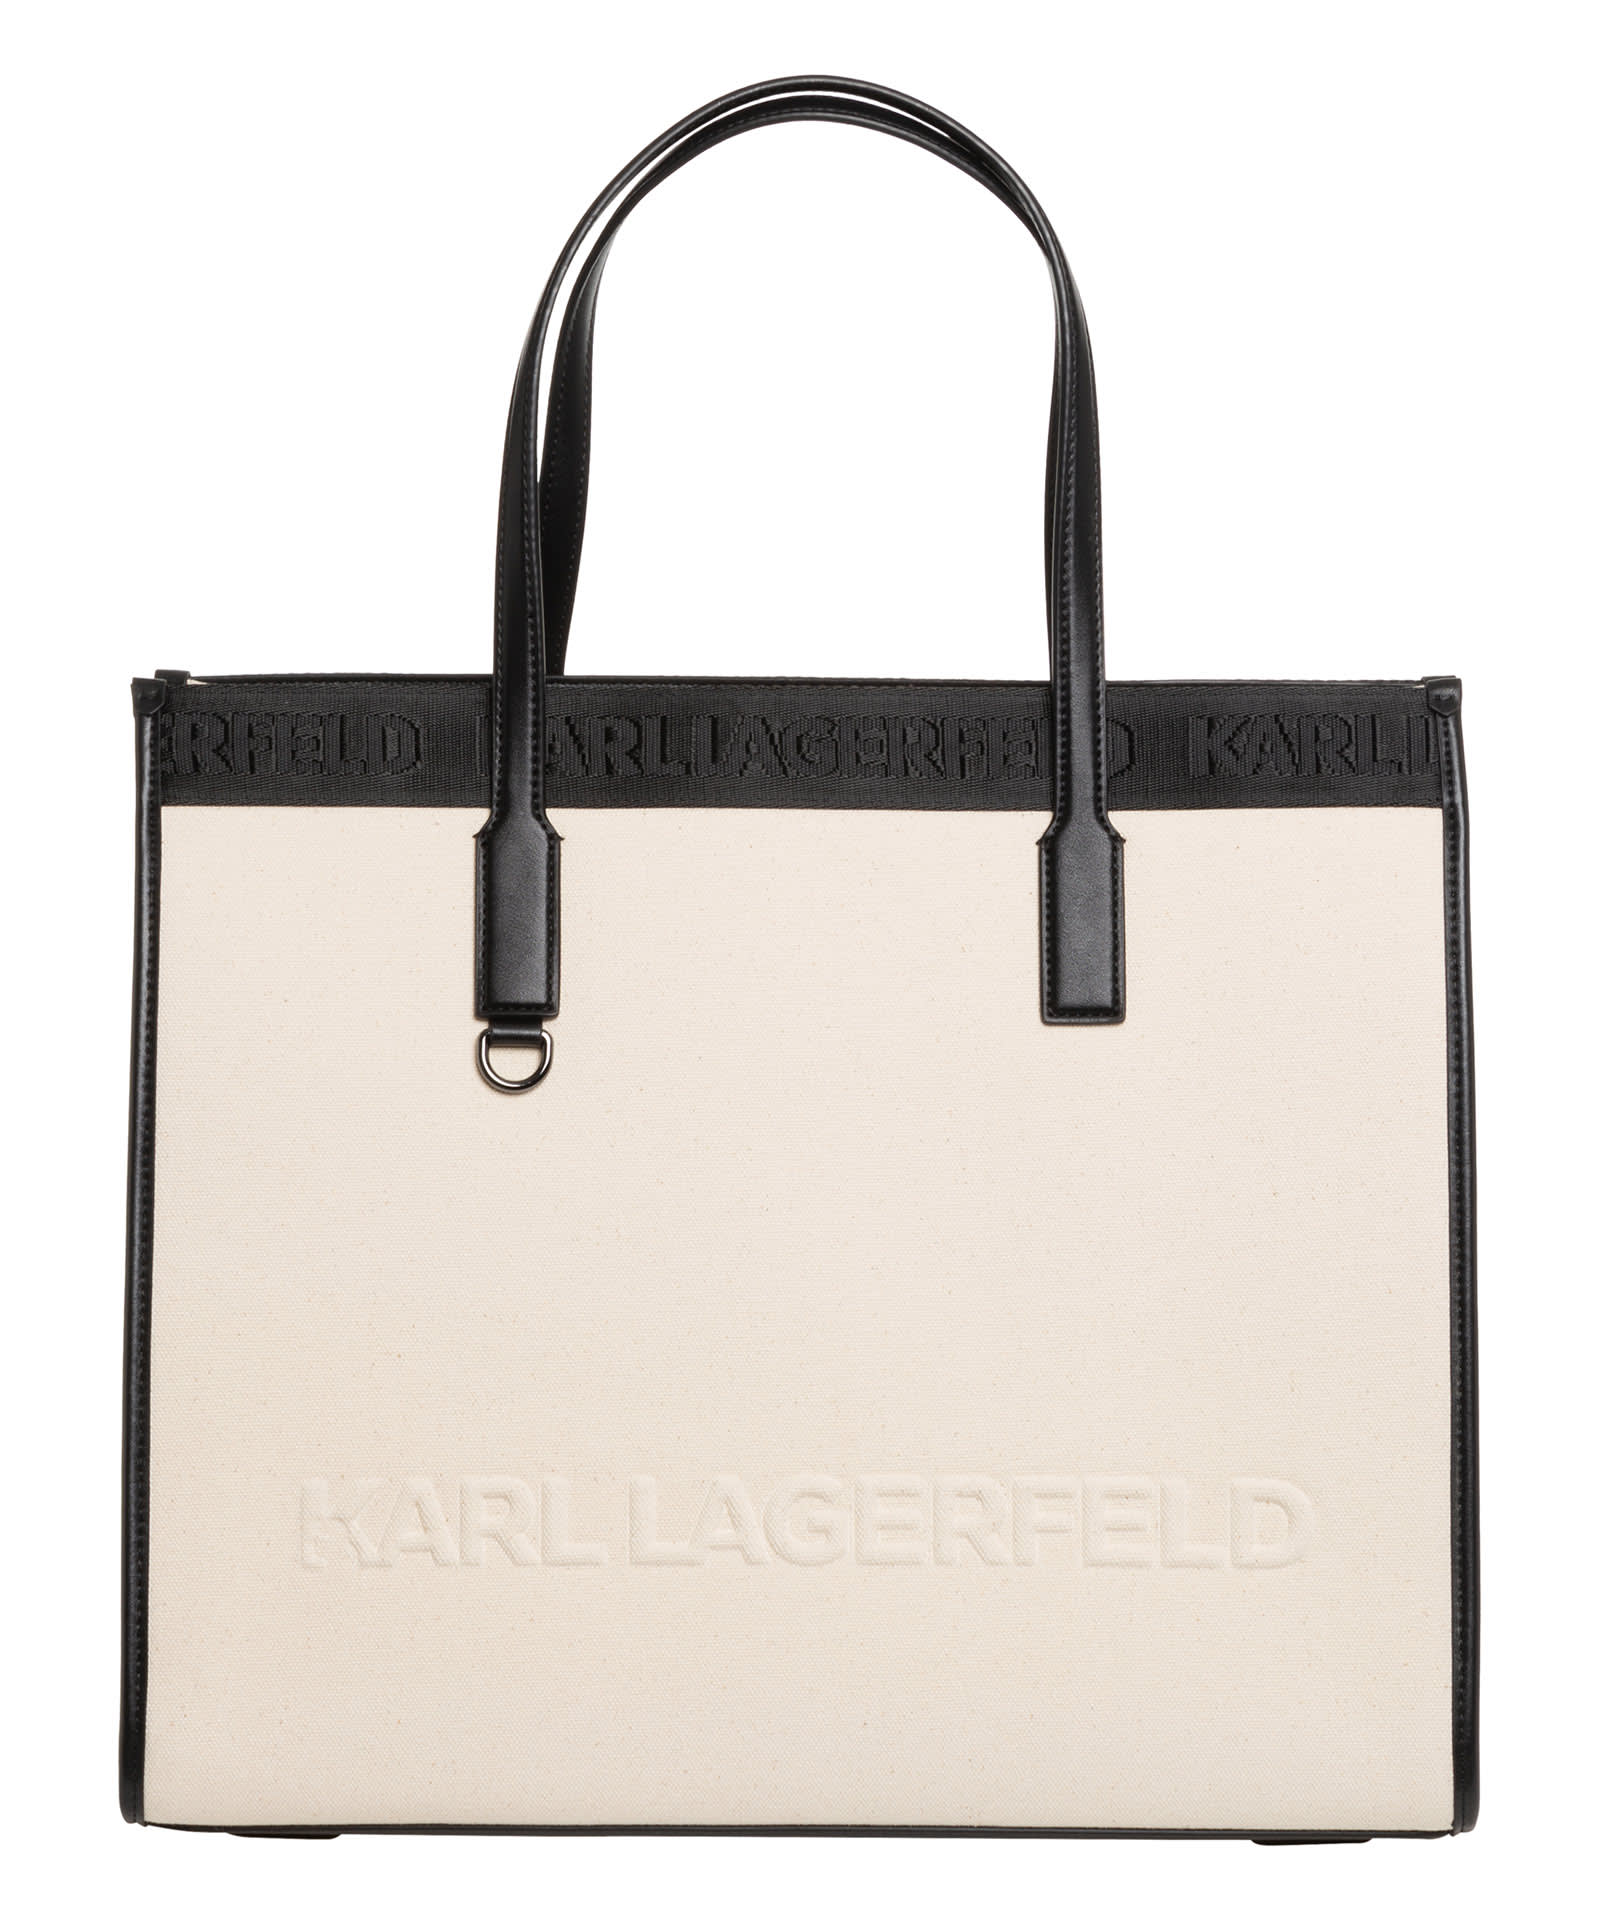 Karl Lagerfeld K/skuare Cara Loves Karl Cara Loves Karl Tote Bag